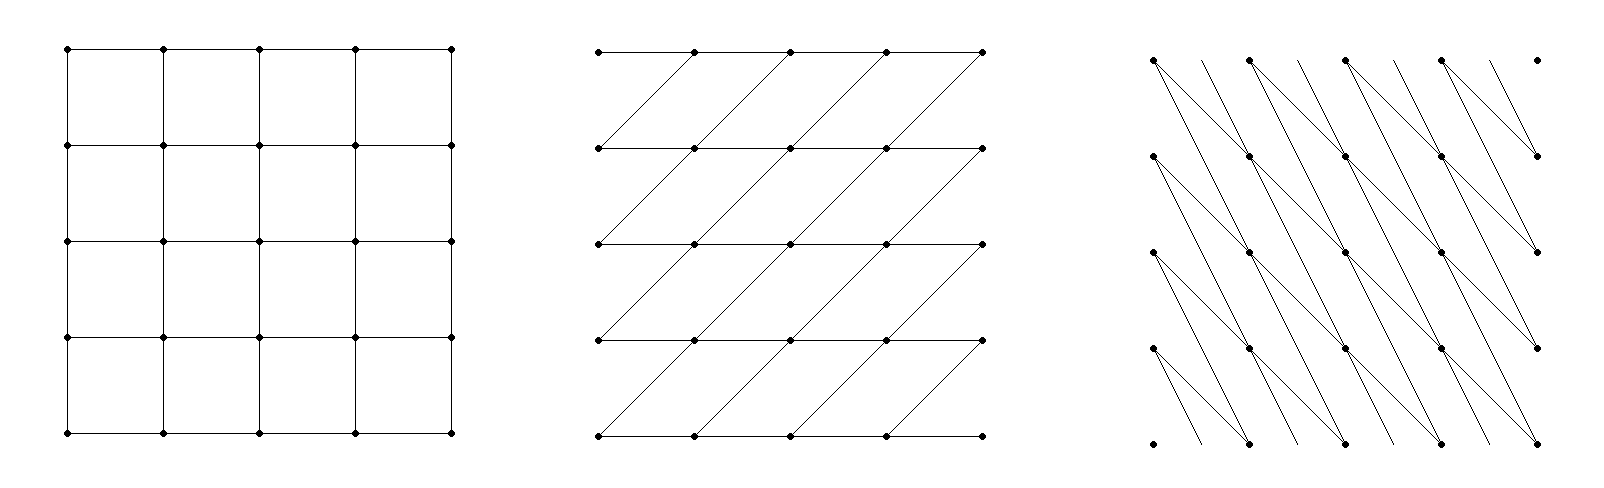 equivalent lattices